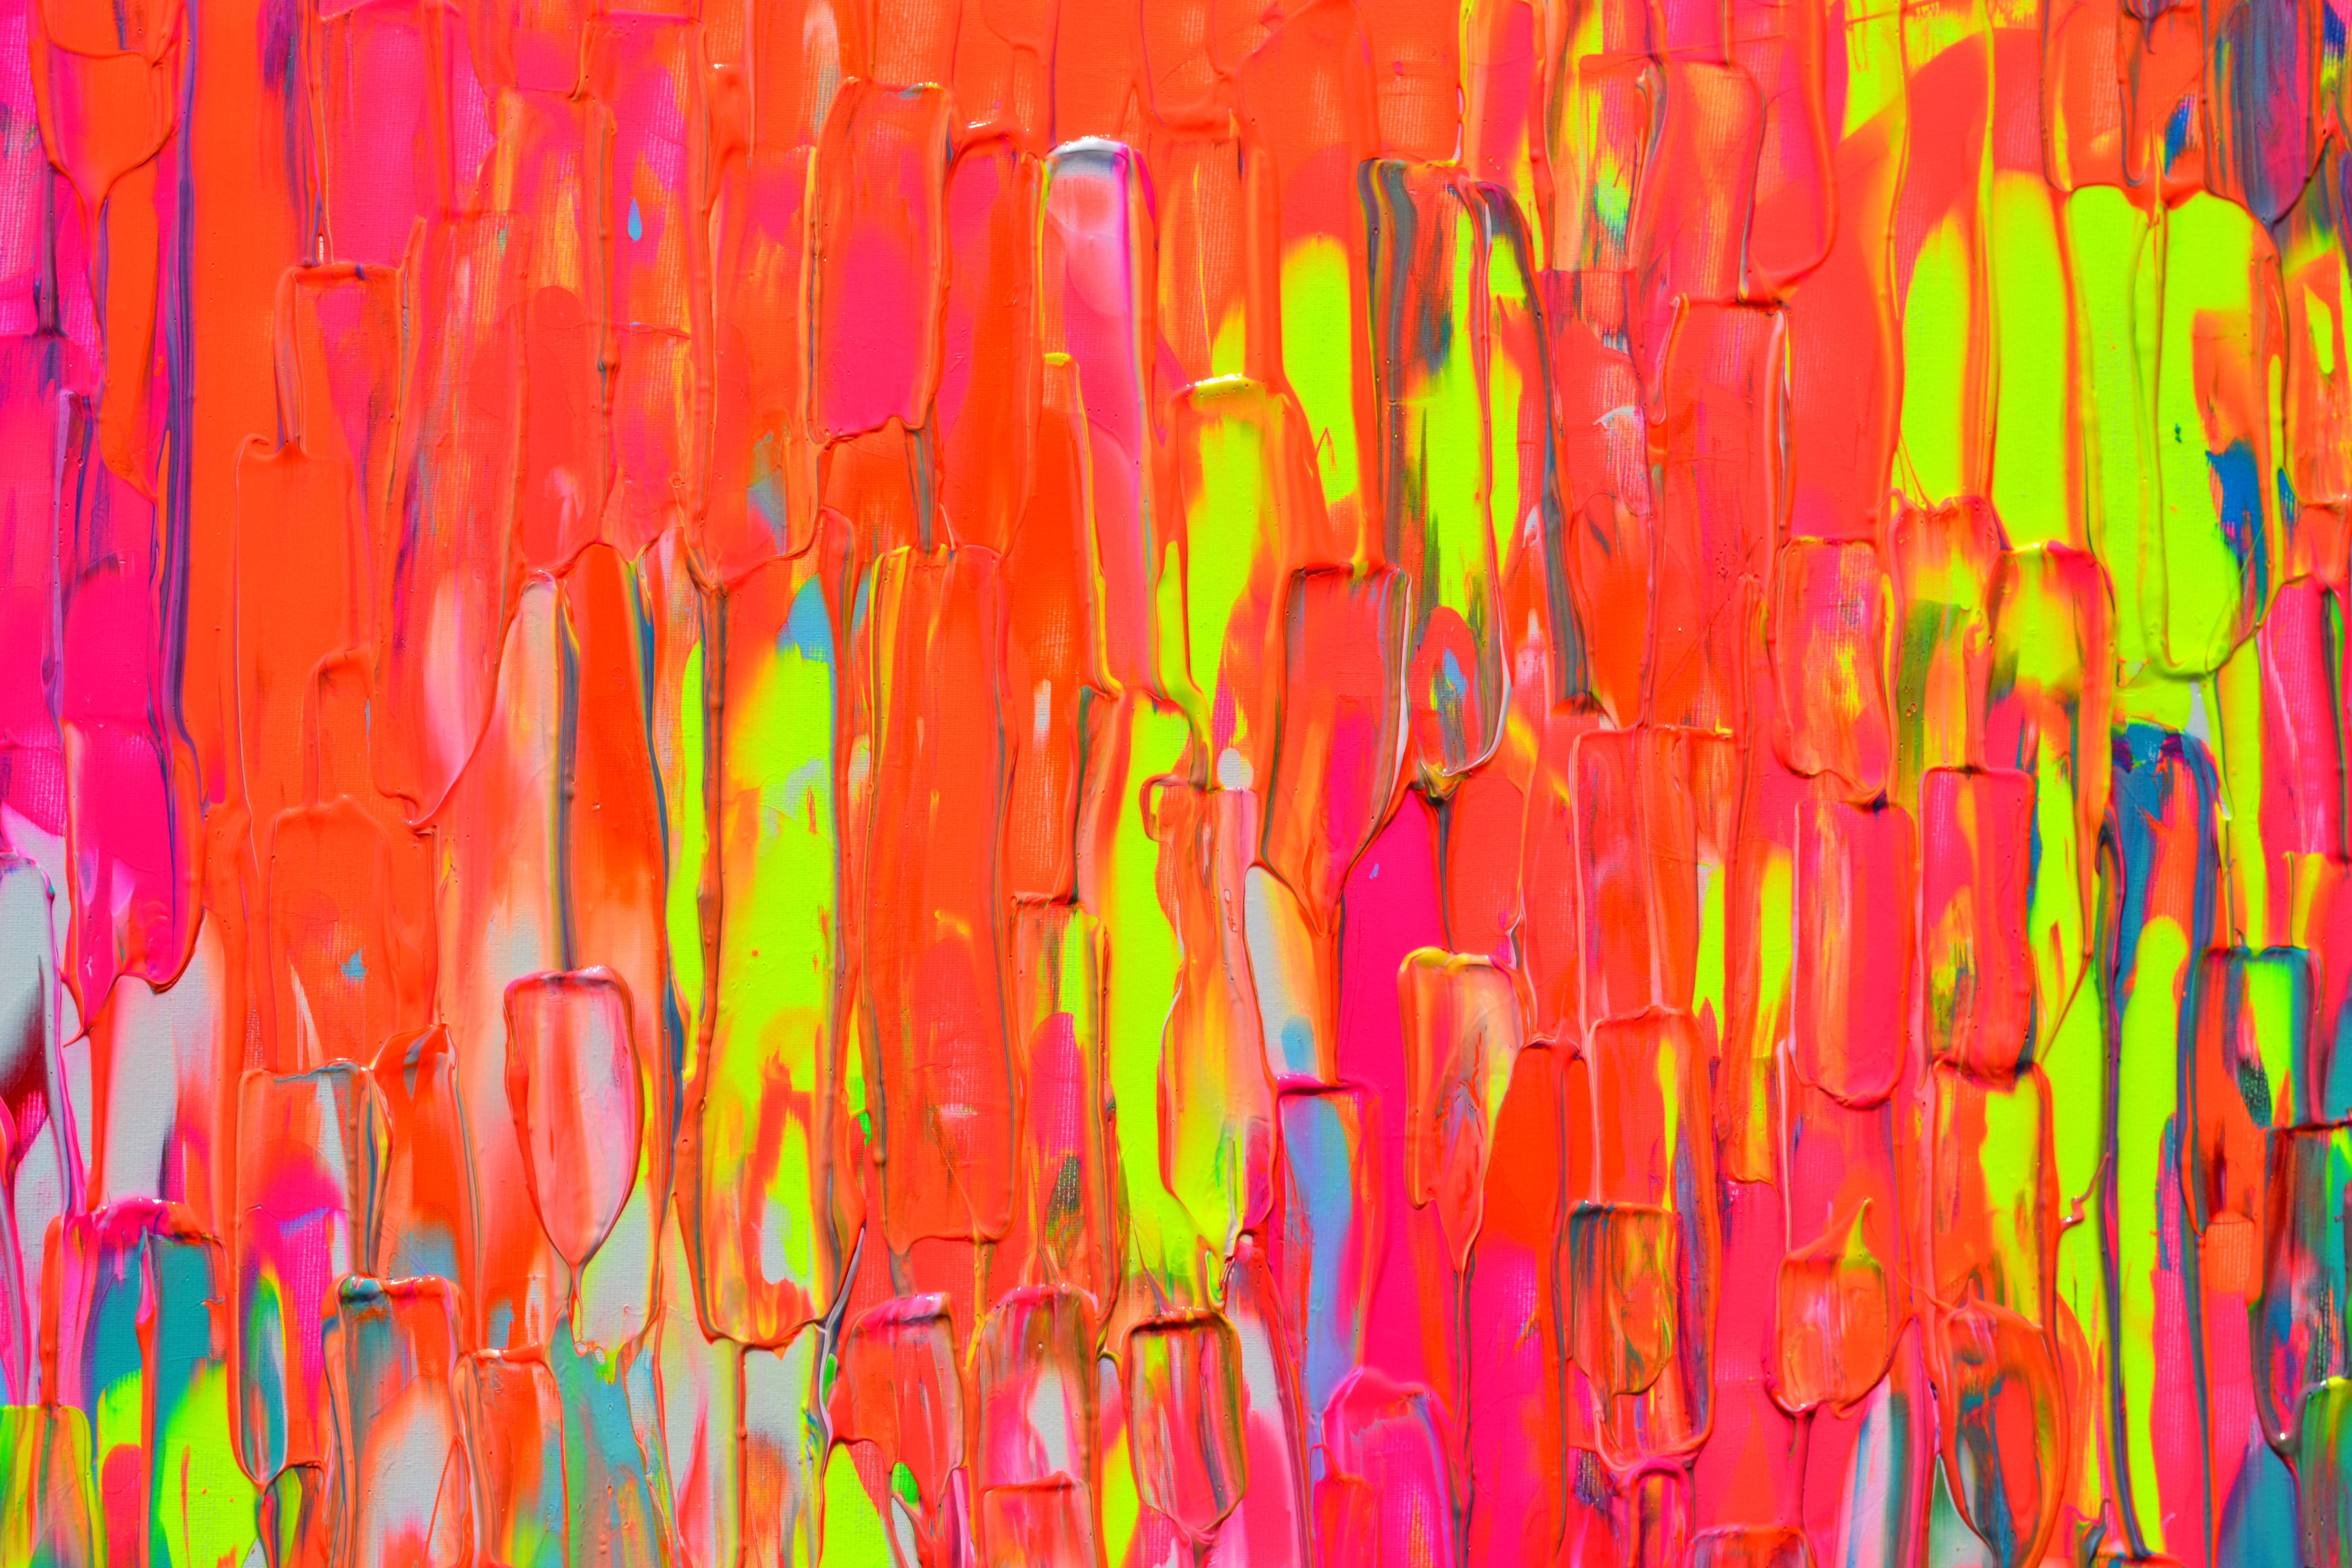 Ein sehr schönes großes, farbenfrohes abstraktes Gemälde mit vielen Neon-Nuancen, stark strukturiert, lebendig und emotional.
HÄNGEFERTIG - GALERIEQUALITÄT
Es geht um Farben, Glück und Freiheit!
Abmessungen: 140x80X4 cm - 55,12x31,5x1,6 Zoll.
Einige